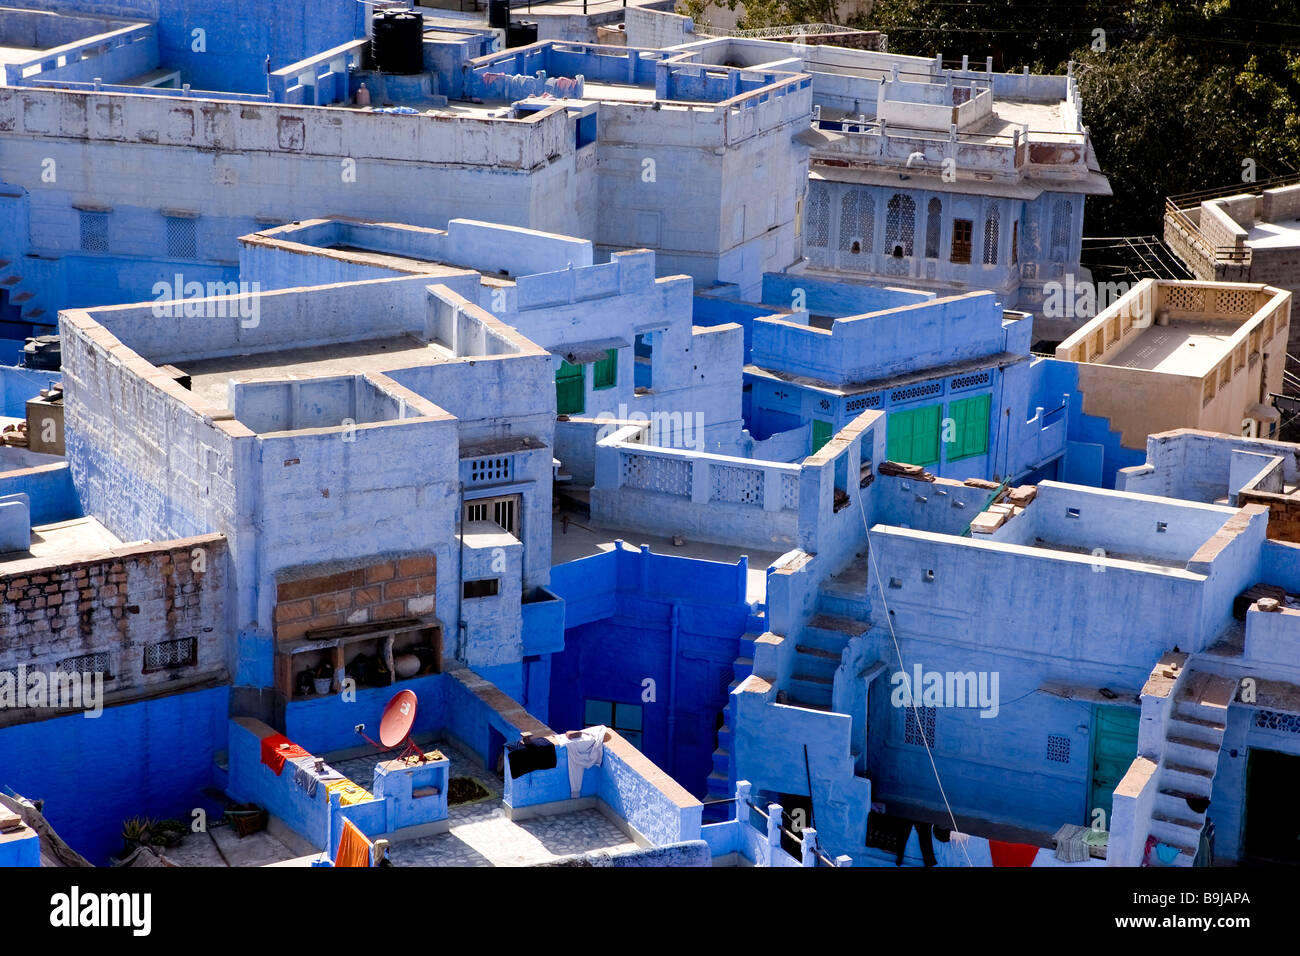 Die blaue Stadt ist eine Nahaufnahme der blauen Häuser in Jodhpur Nordindien, die ganze Stadt blau gemalt. Stockfoto